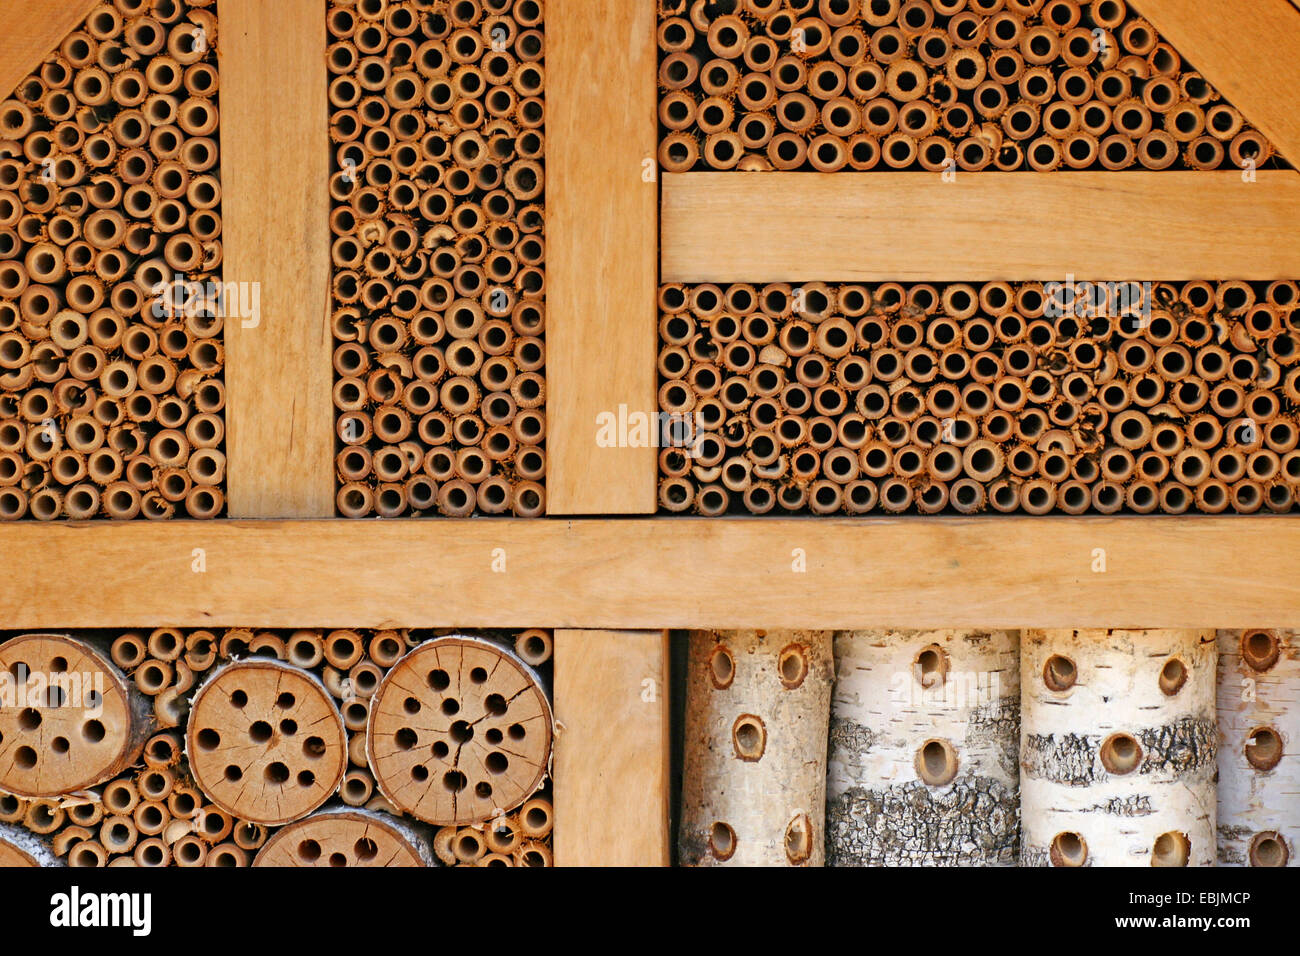 Hôtel pour insectes abeilles sauvages, Allemagne Banque D'Images